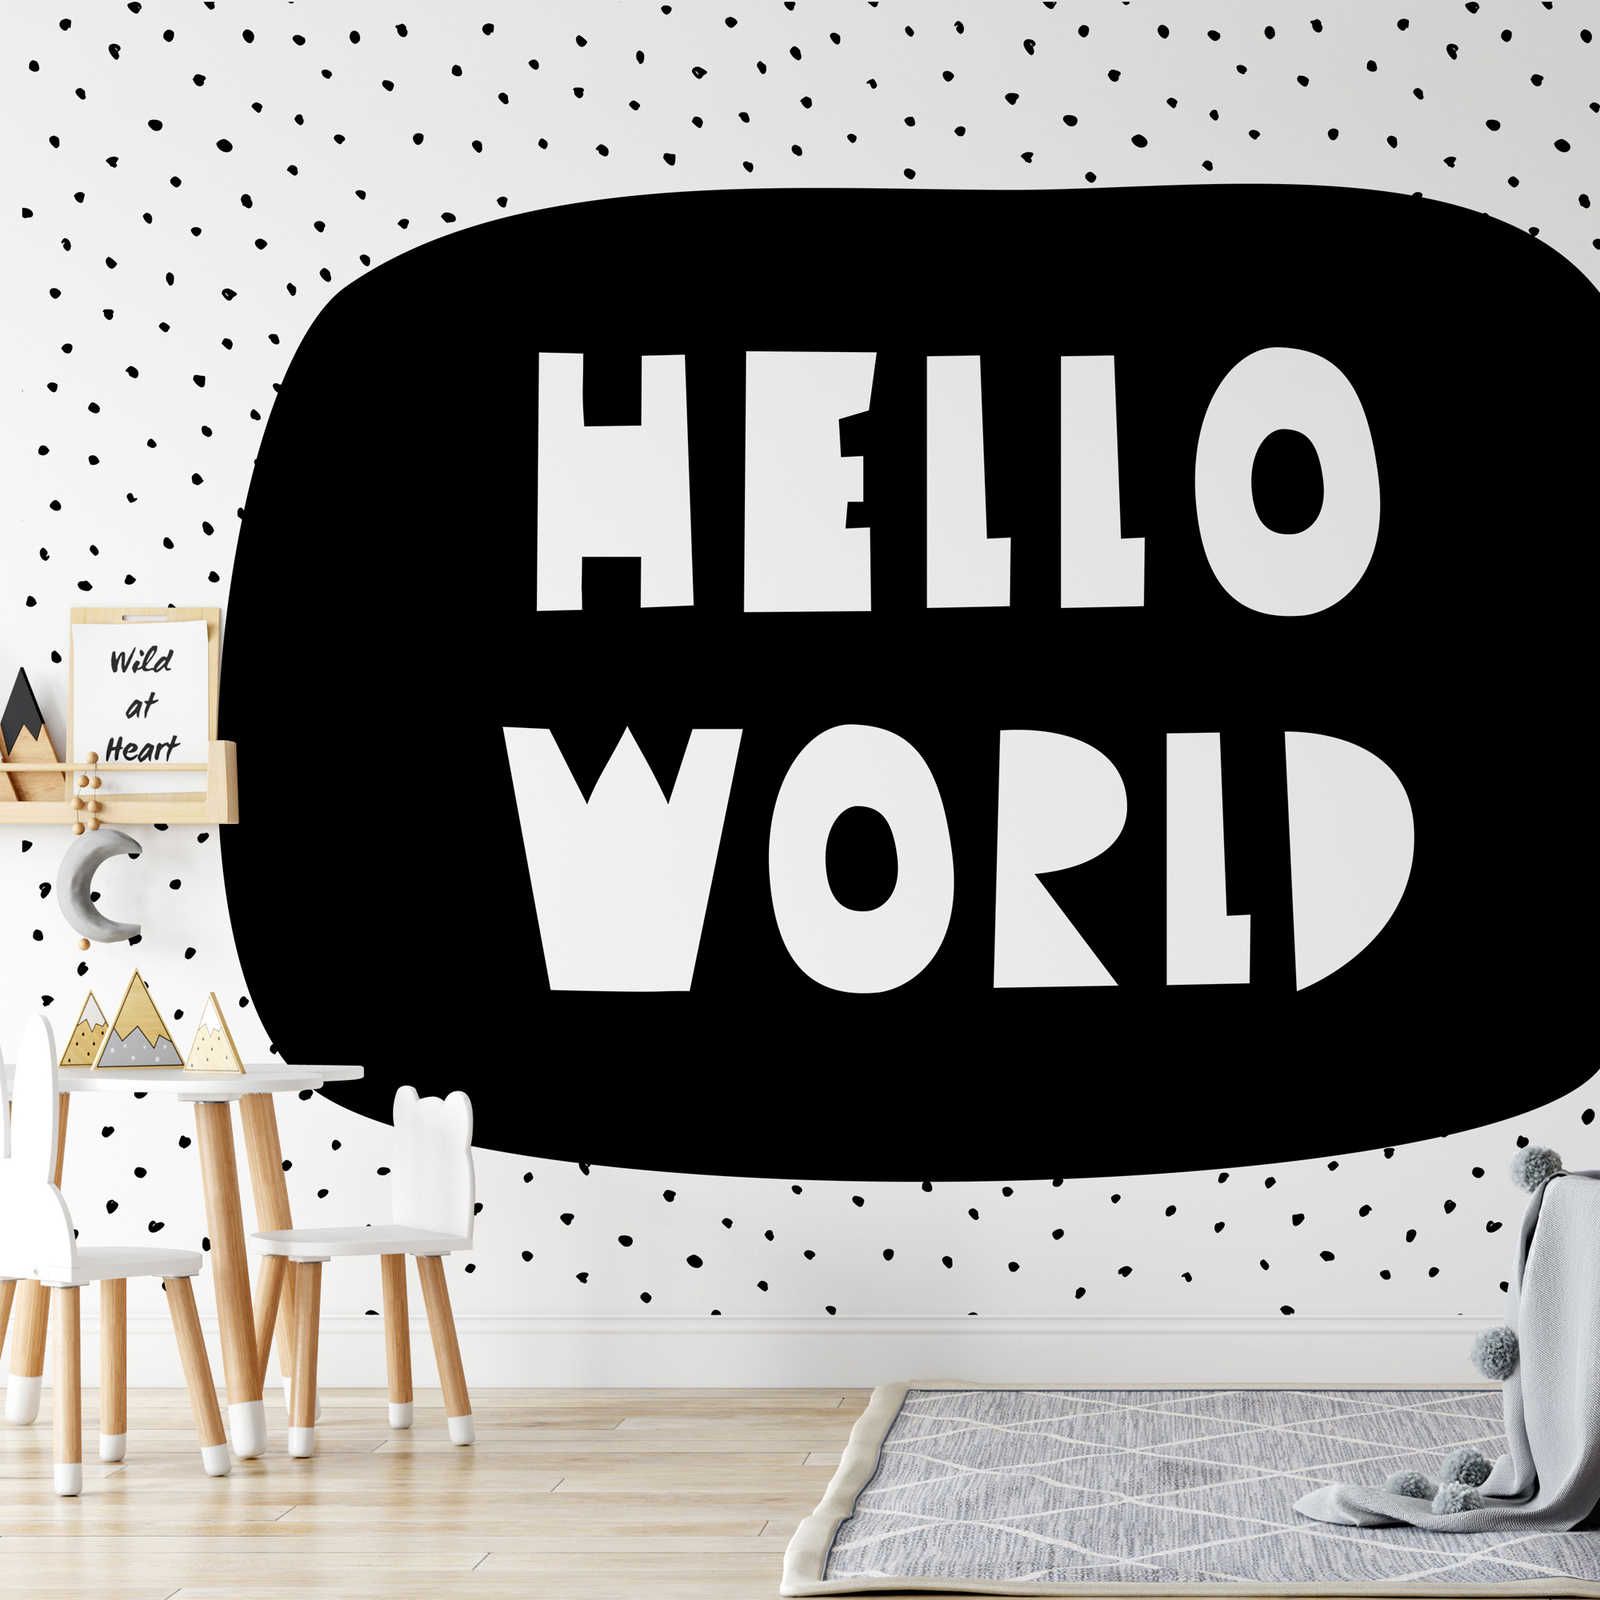 Fotomurali per la camera dei bambini con la scritta "Hello World" - Pile liscio e perlato
